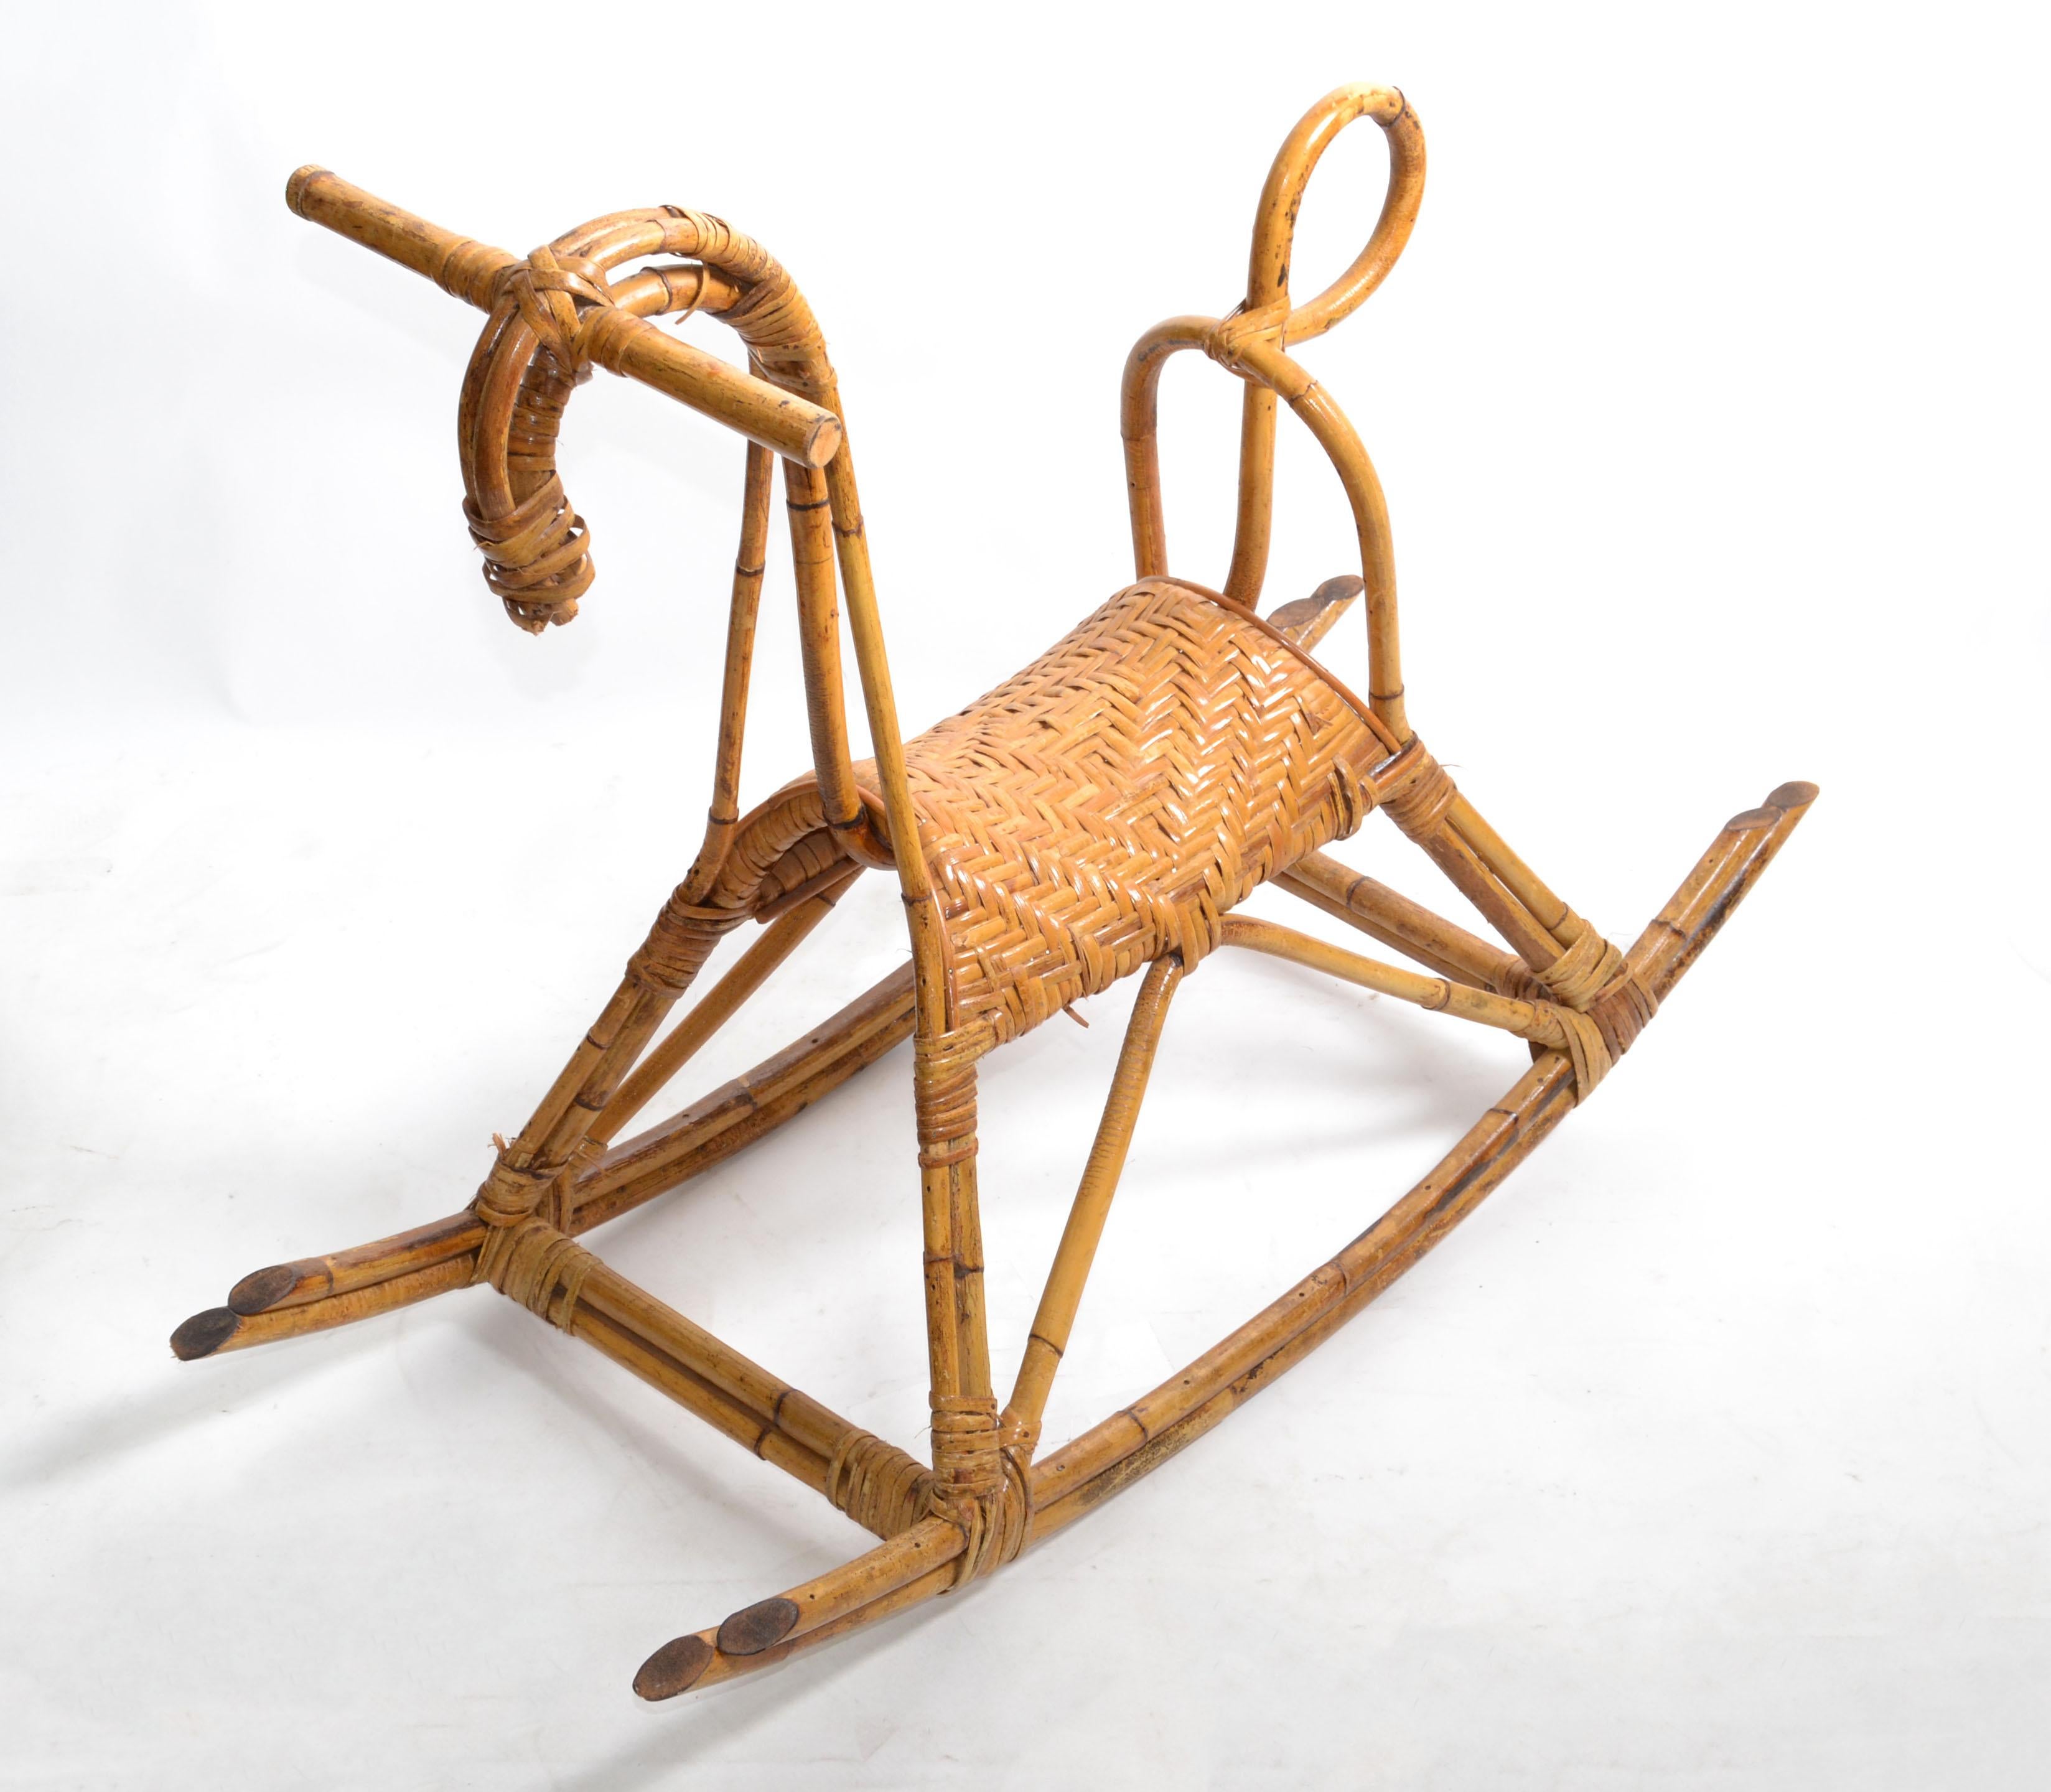 Cheval à bascule original Franco Albini en rotin et bambou de style moderne du milieu du siècle, sculpture d'animaux. 
Noyau de cheval à bascule en rotin et bambou avec siège en vannerie.
Ce cheval apporte de la joie aux petits et grands